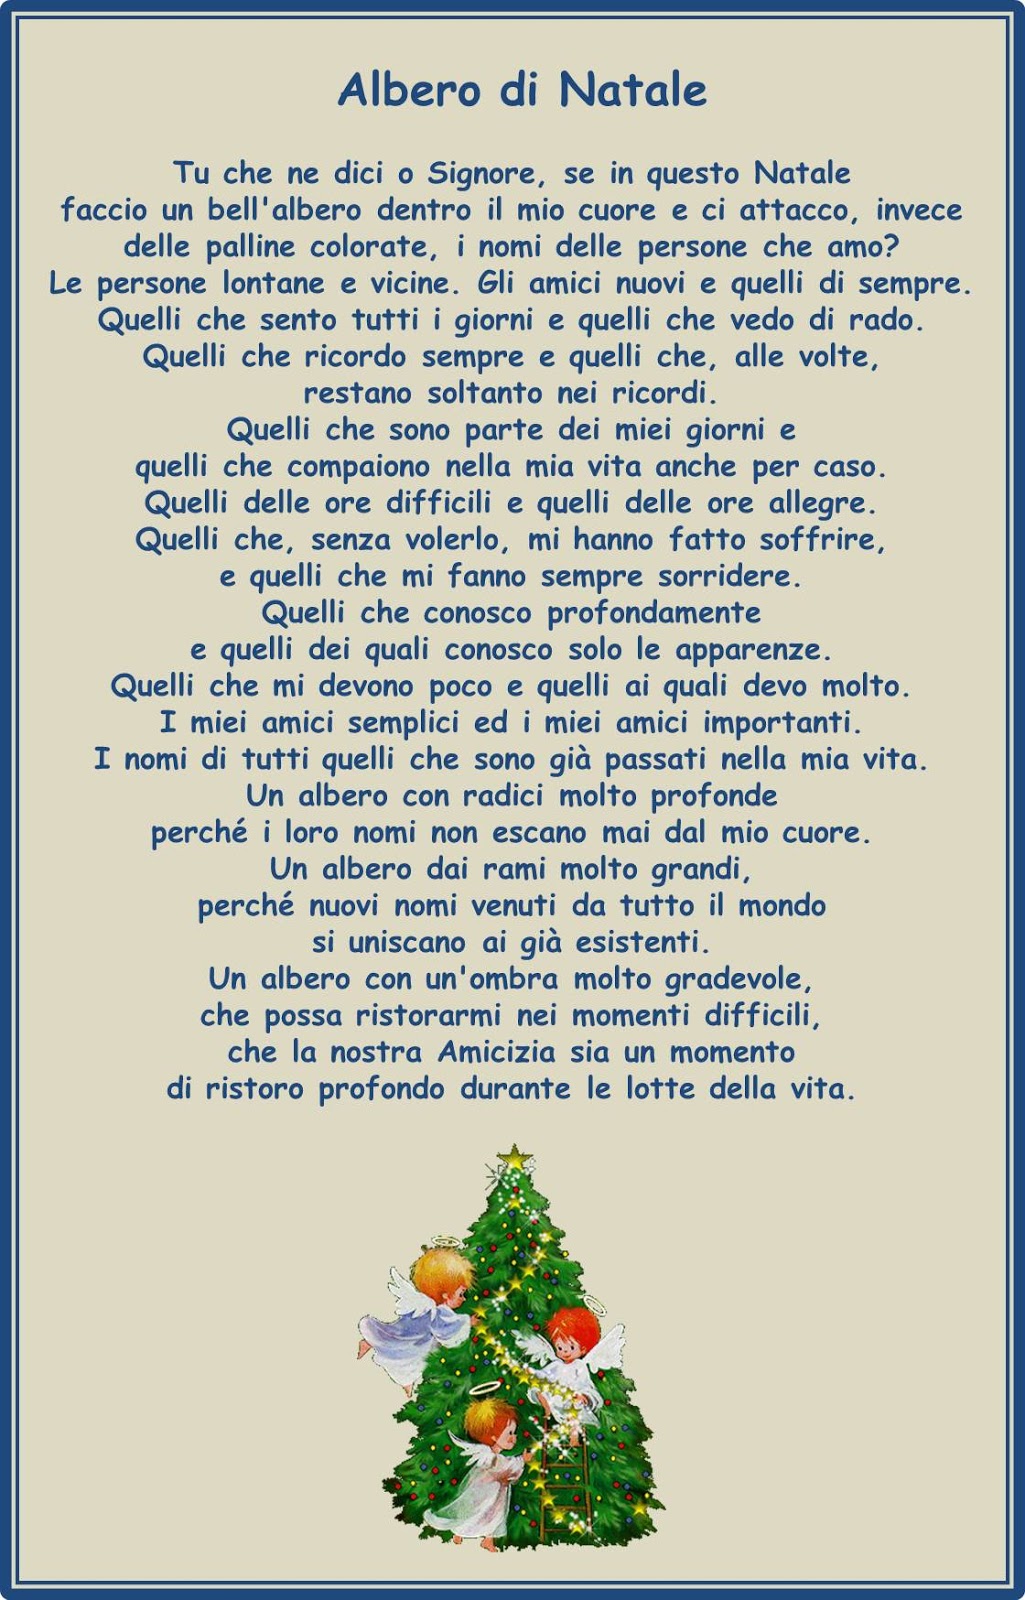 Poesia Albero Di Natale.Francesca Ceccherini Testi E Immagini Di Psicologia Sociale Religione Poesia Narrativa Poesia Dell Albero Di Natale